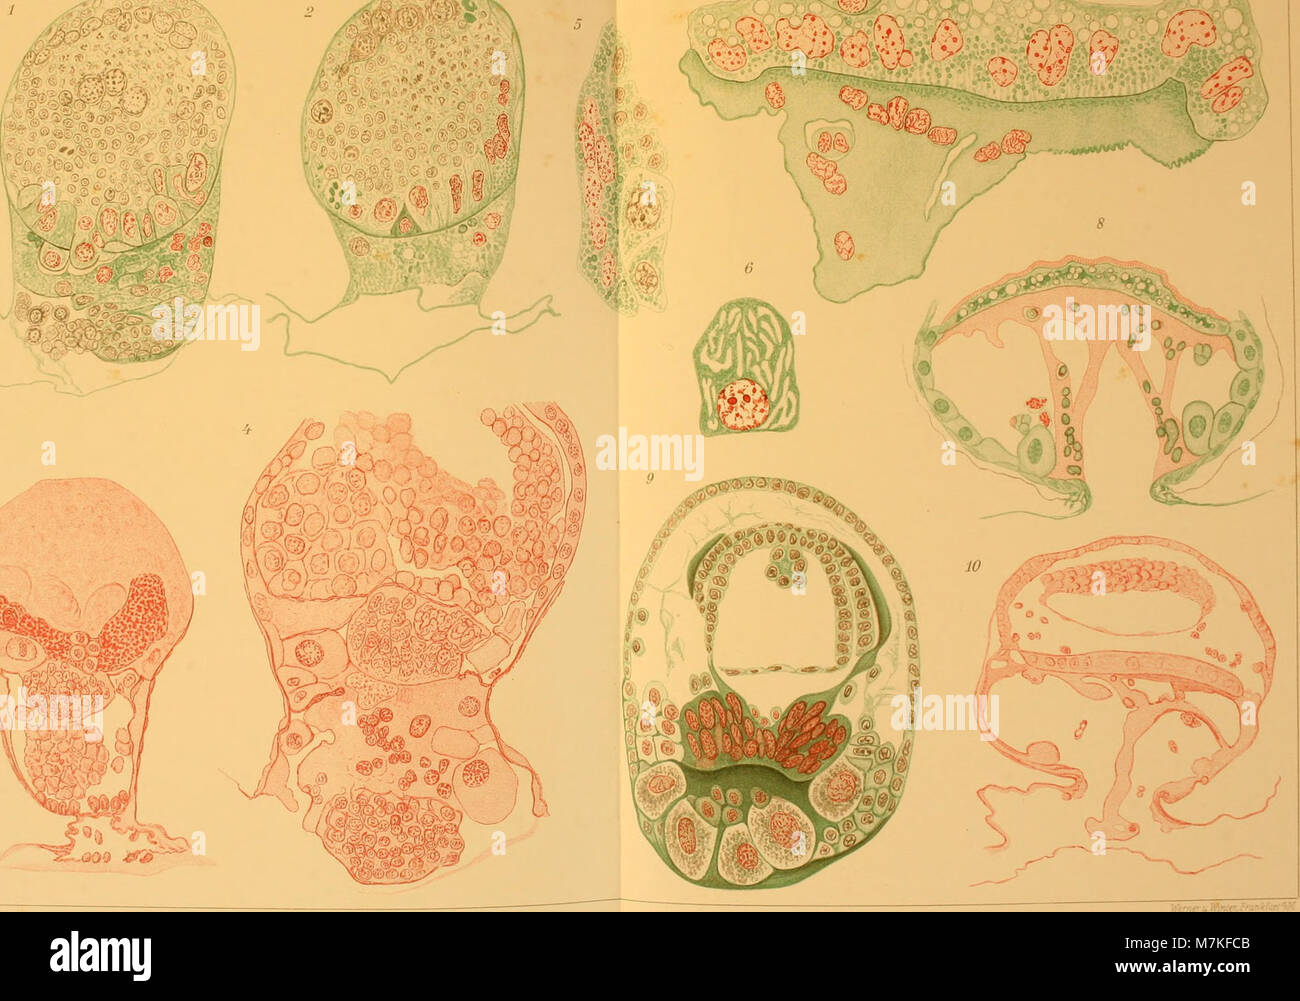 Archiv für mikroskopische Anatomie (1912) (20303694336) Stock Photo